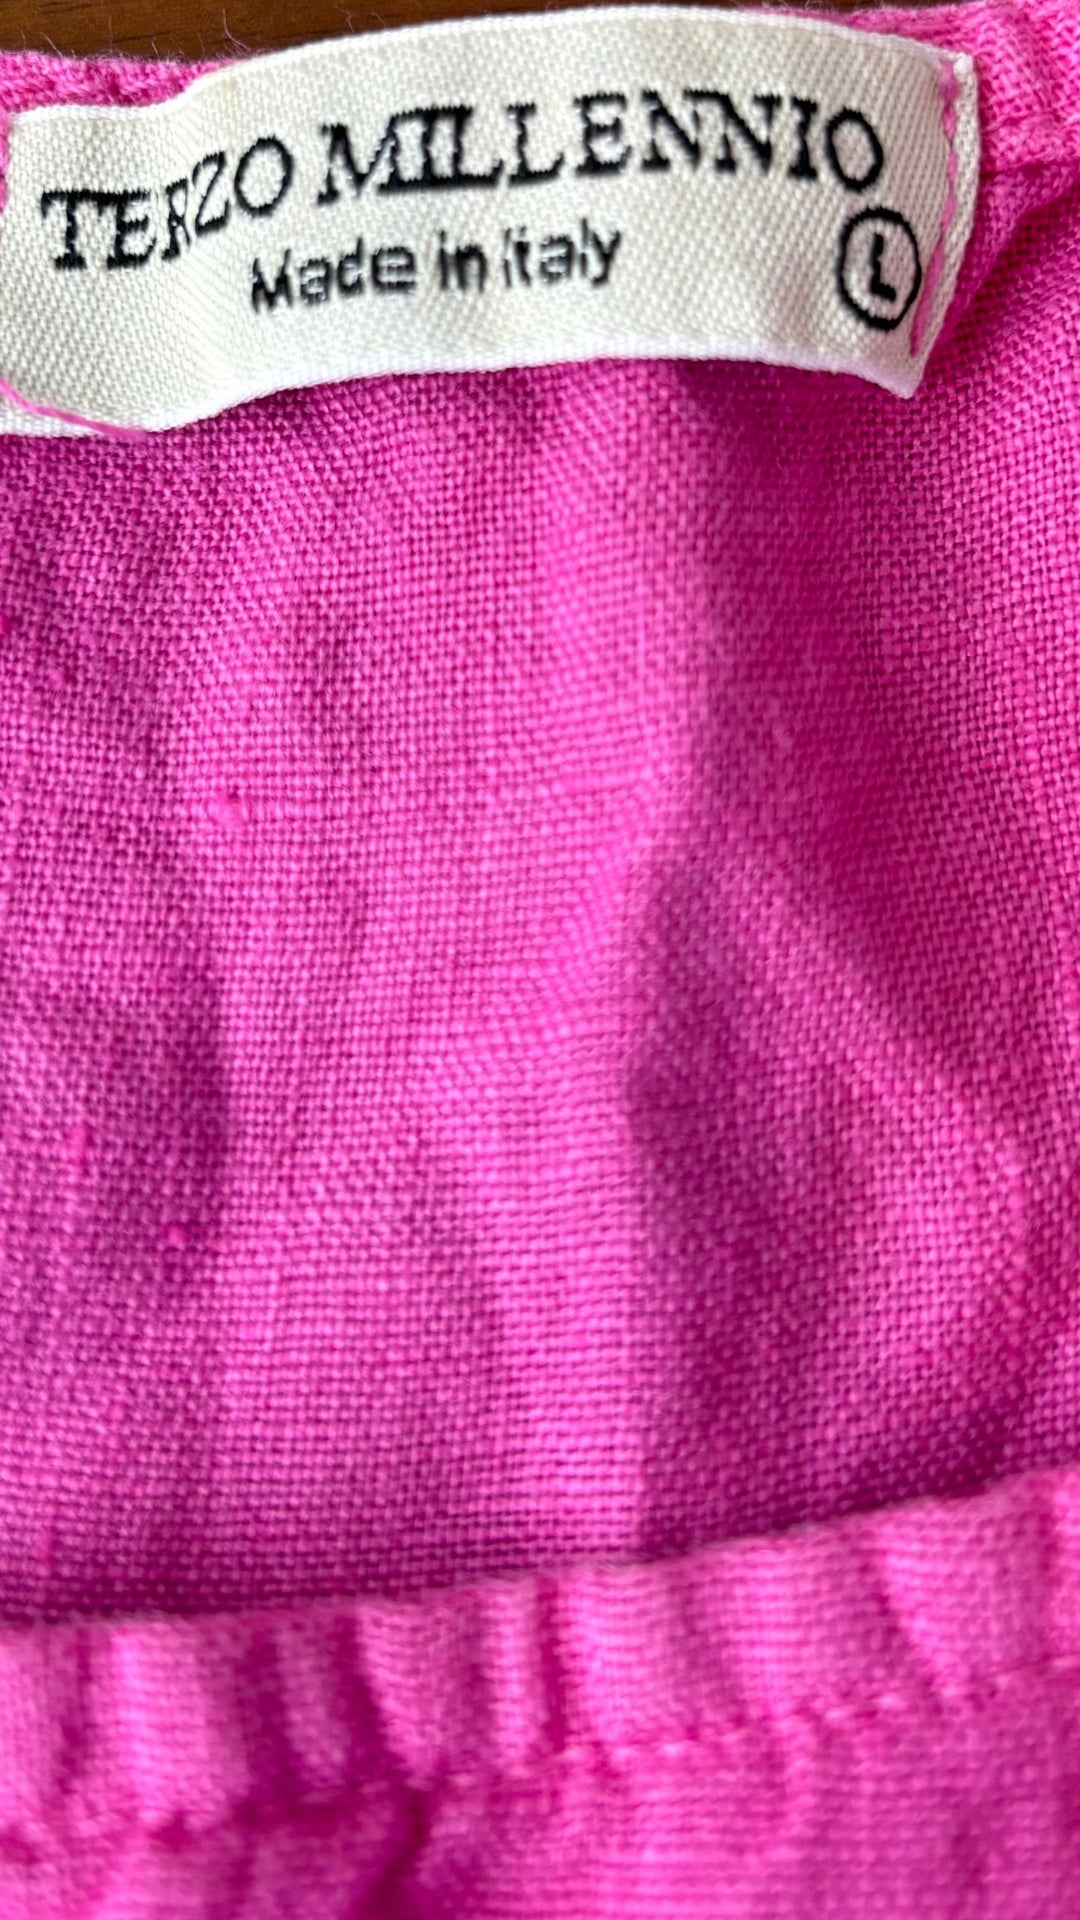 Camisole en lin rose avec ourlet en dentelle Terzo Millennio, taille large. Vue de l'étiquette de marque et taille.